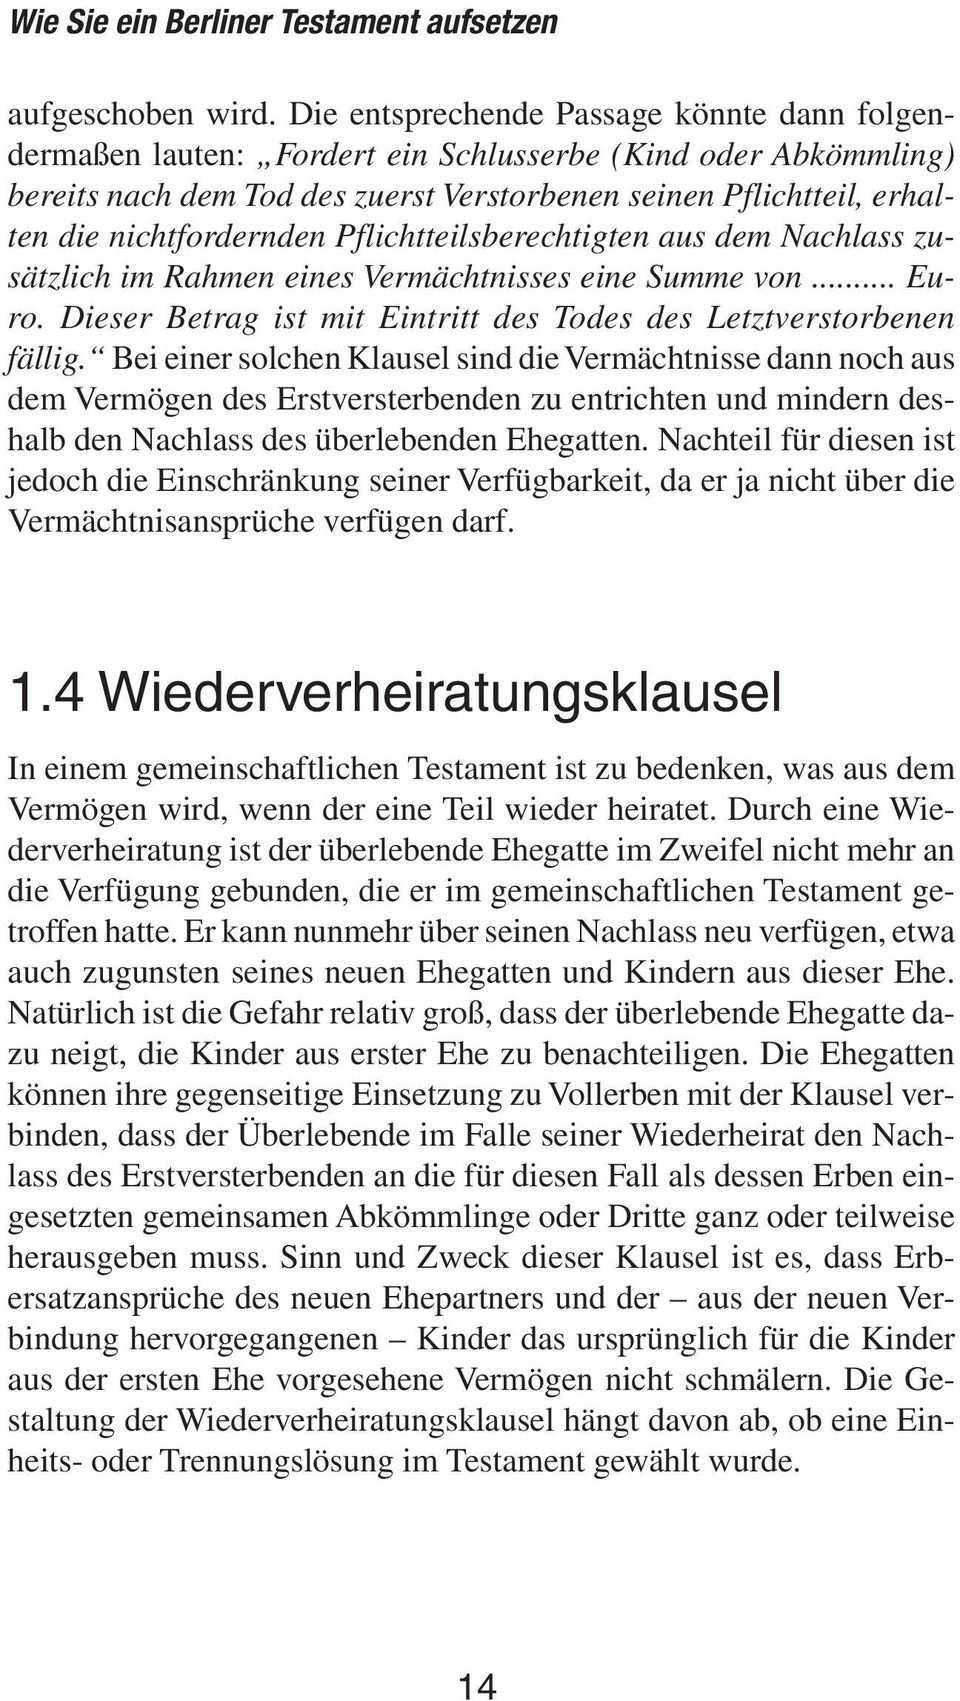 Handbuch Erben Und Vererben Interna Pdf Free Download